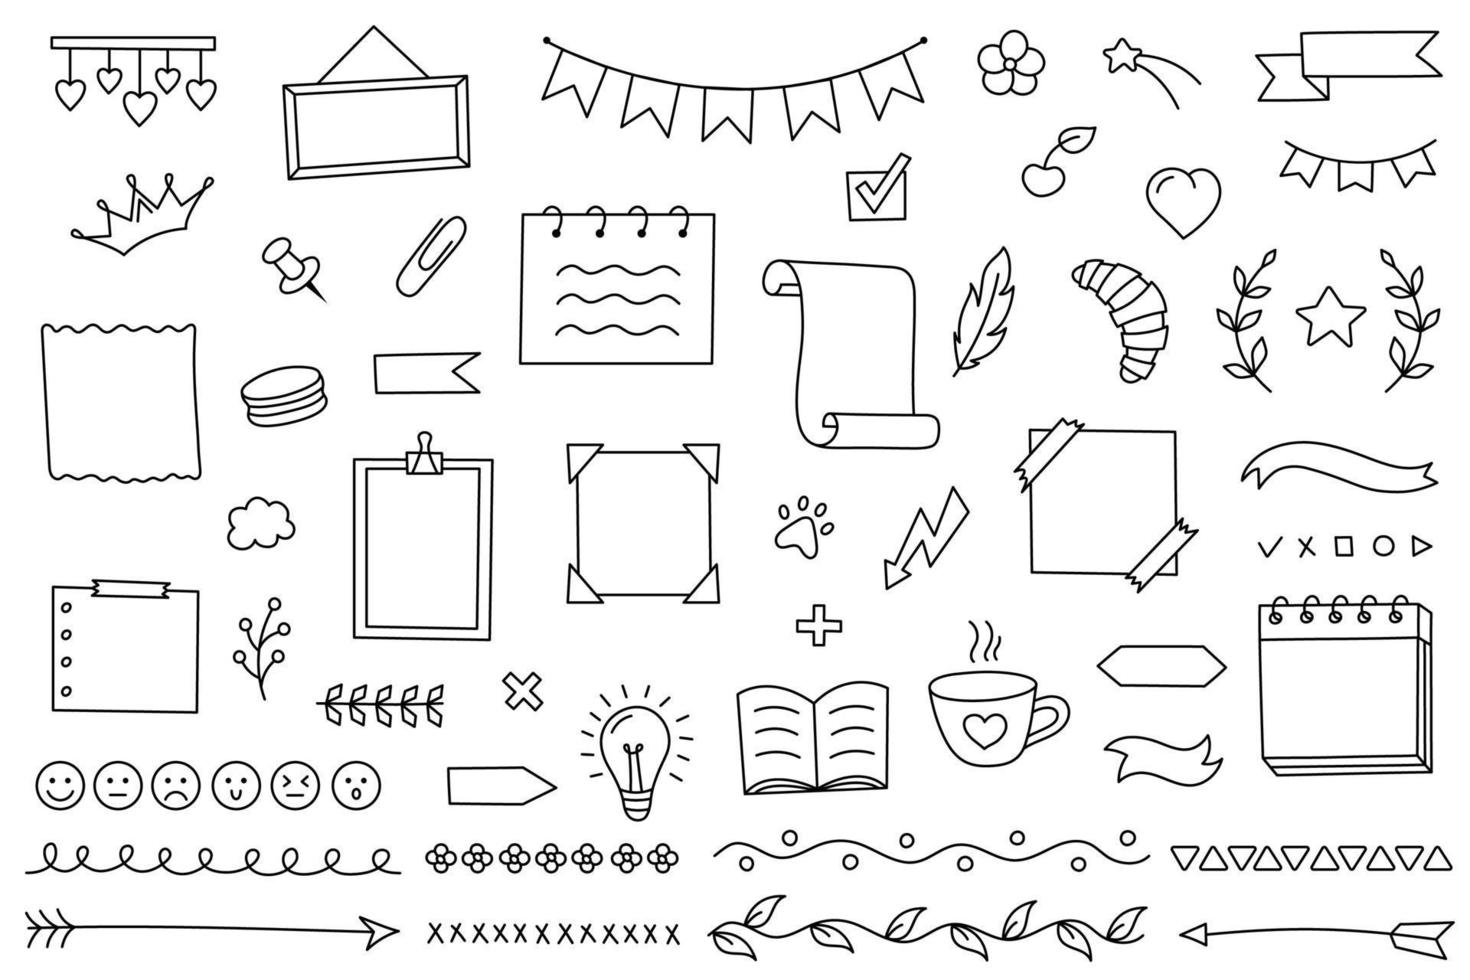 doodle set elementi disegnati a mano per diario, taccuino e pianificatore. calendario vettoriale per studio e lavoro. collezione di decorazioni cornici e adesivi delle linee